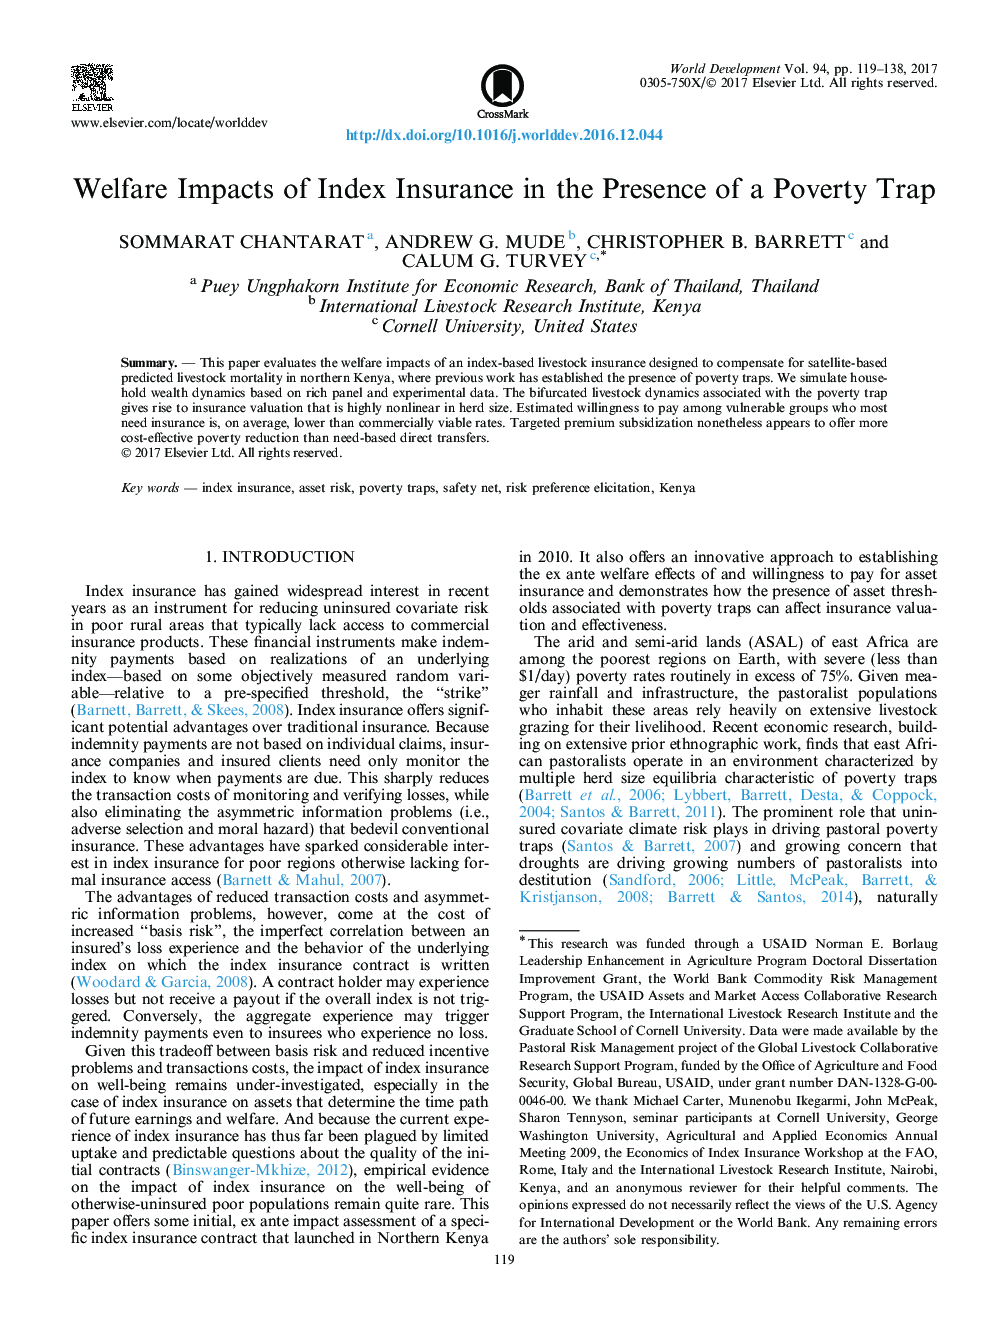 تأثیرات رفاه بیمه شاخص در حضور فقر 